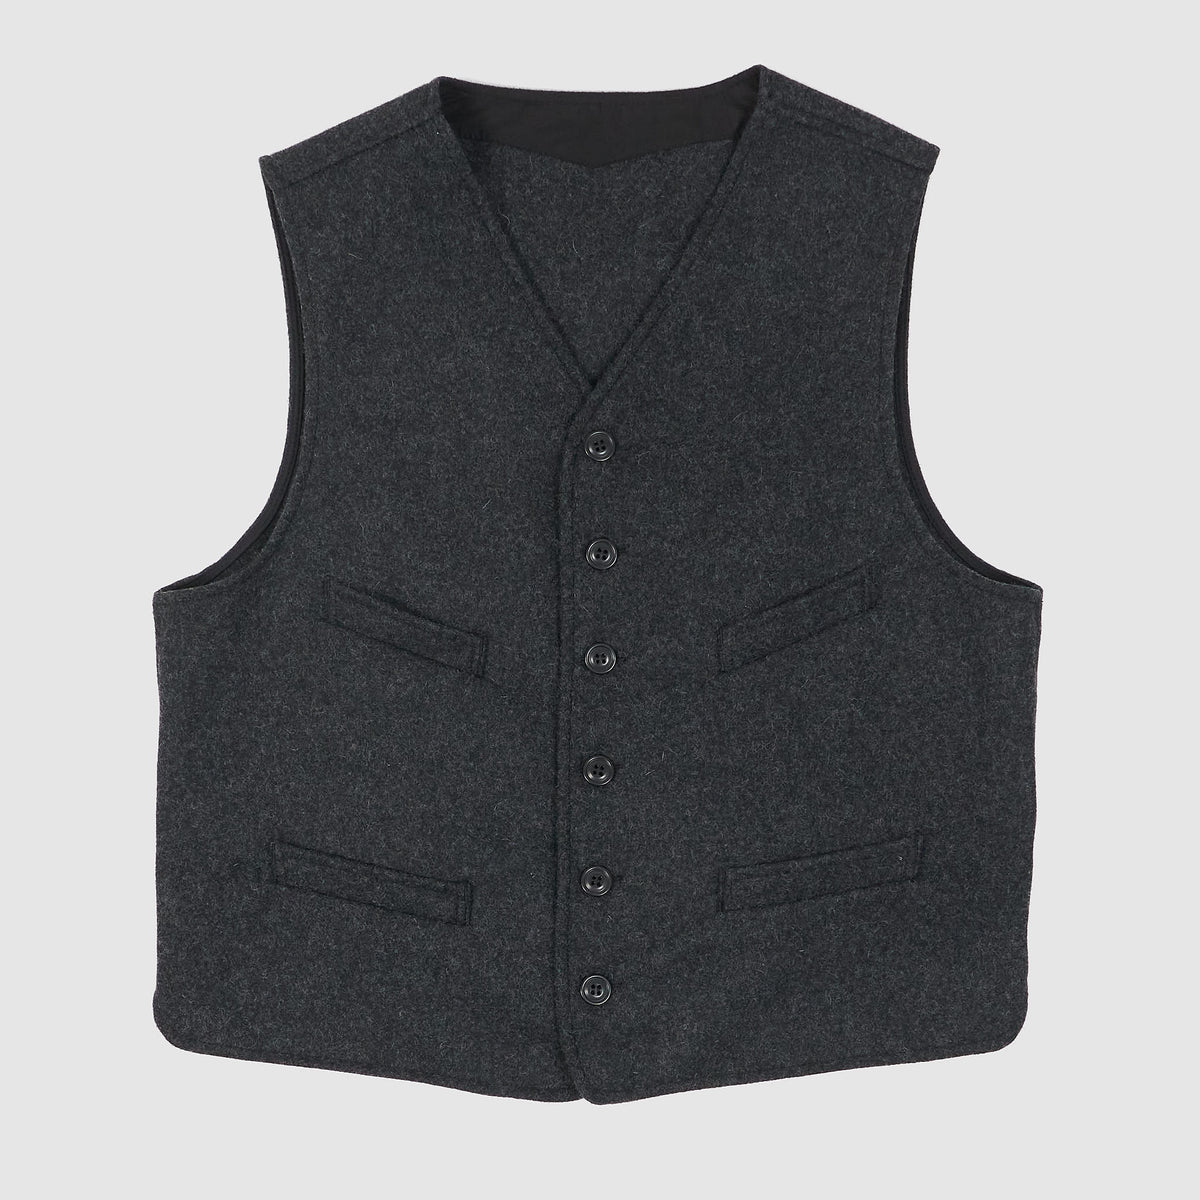 Manifattura Ceccarelli Classic Wool Vest